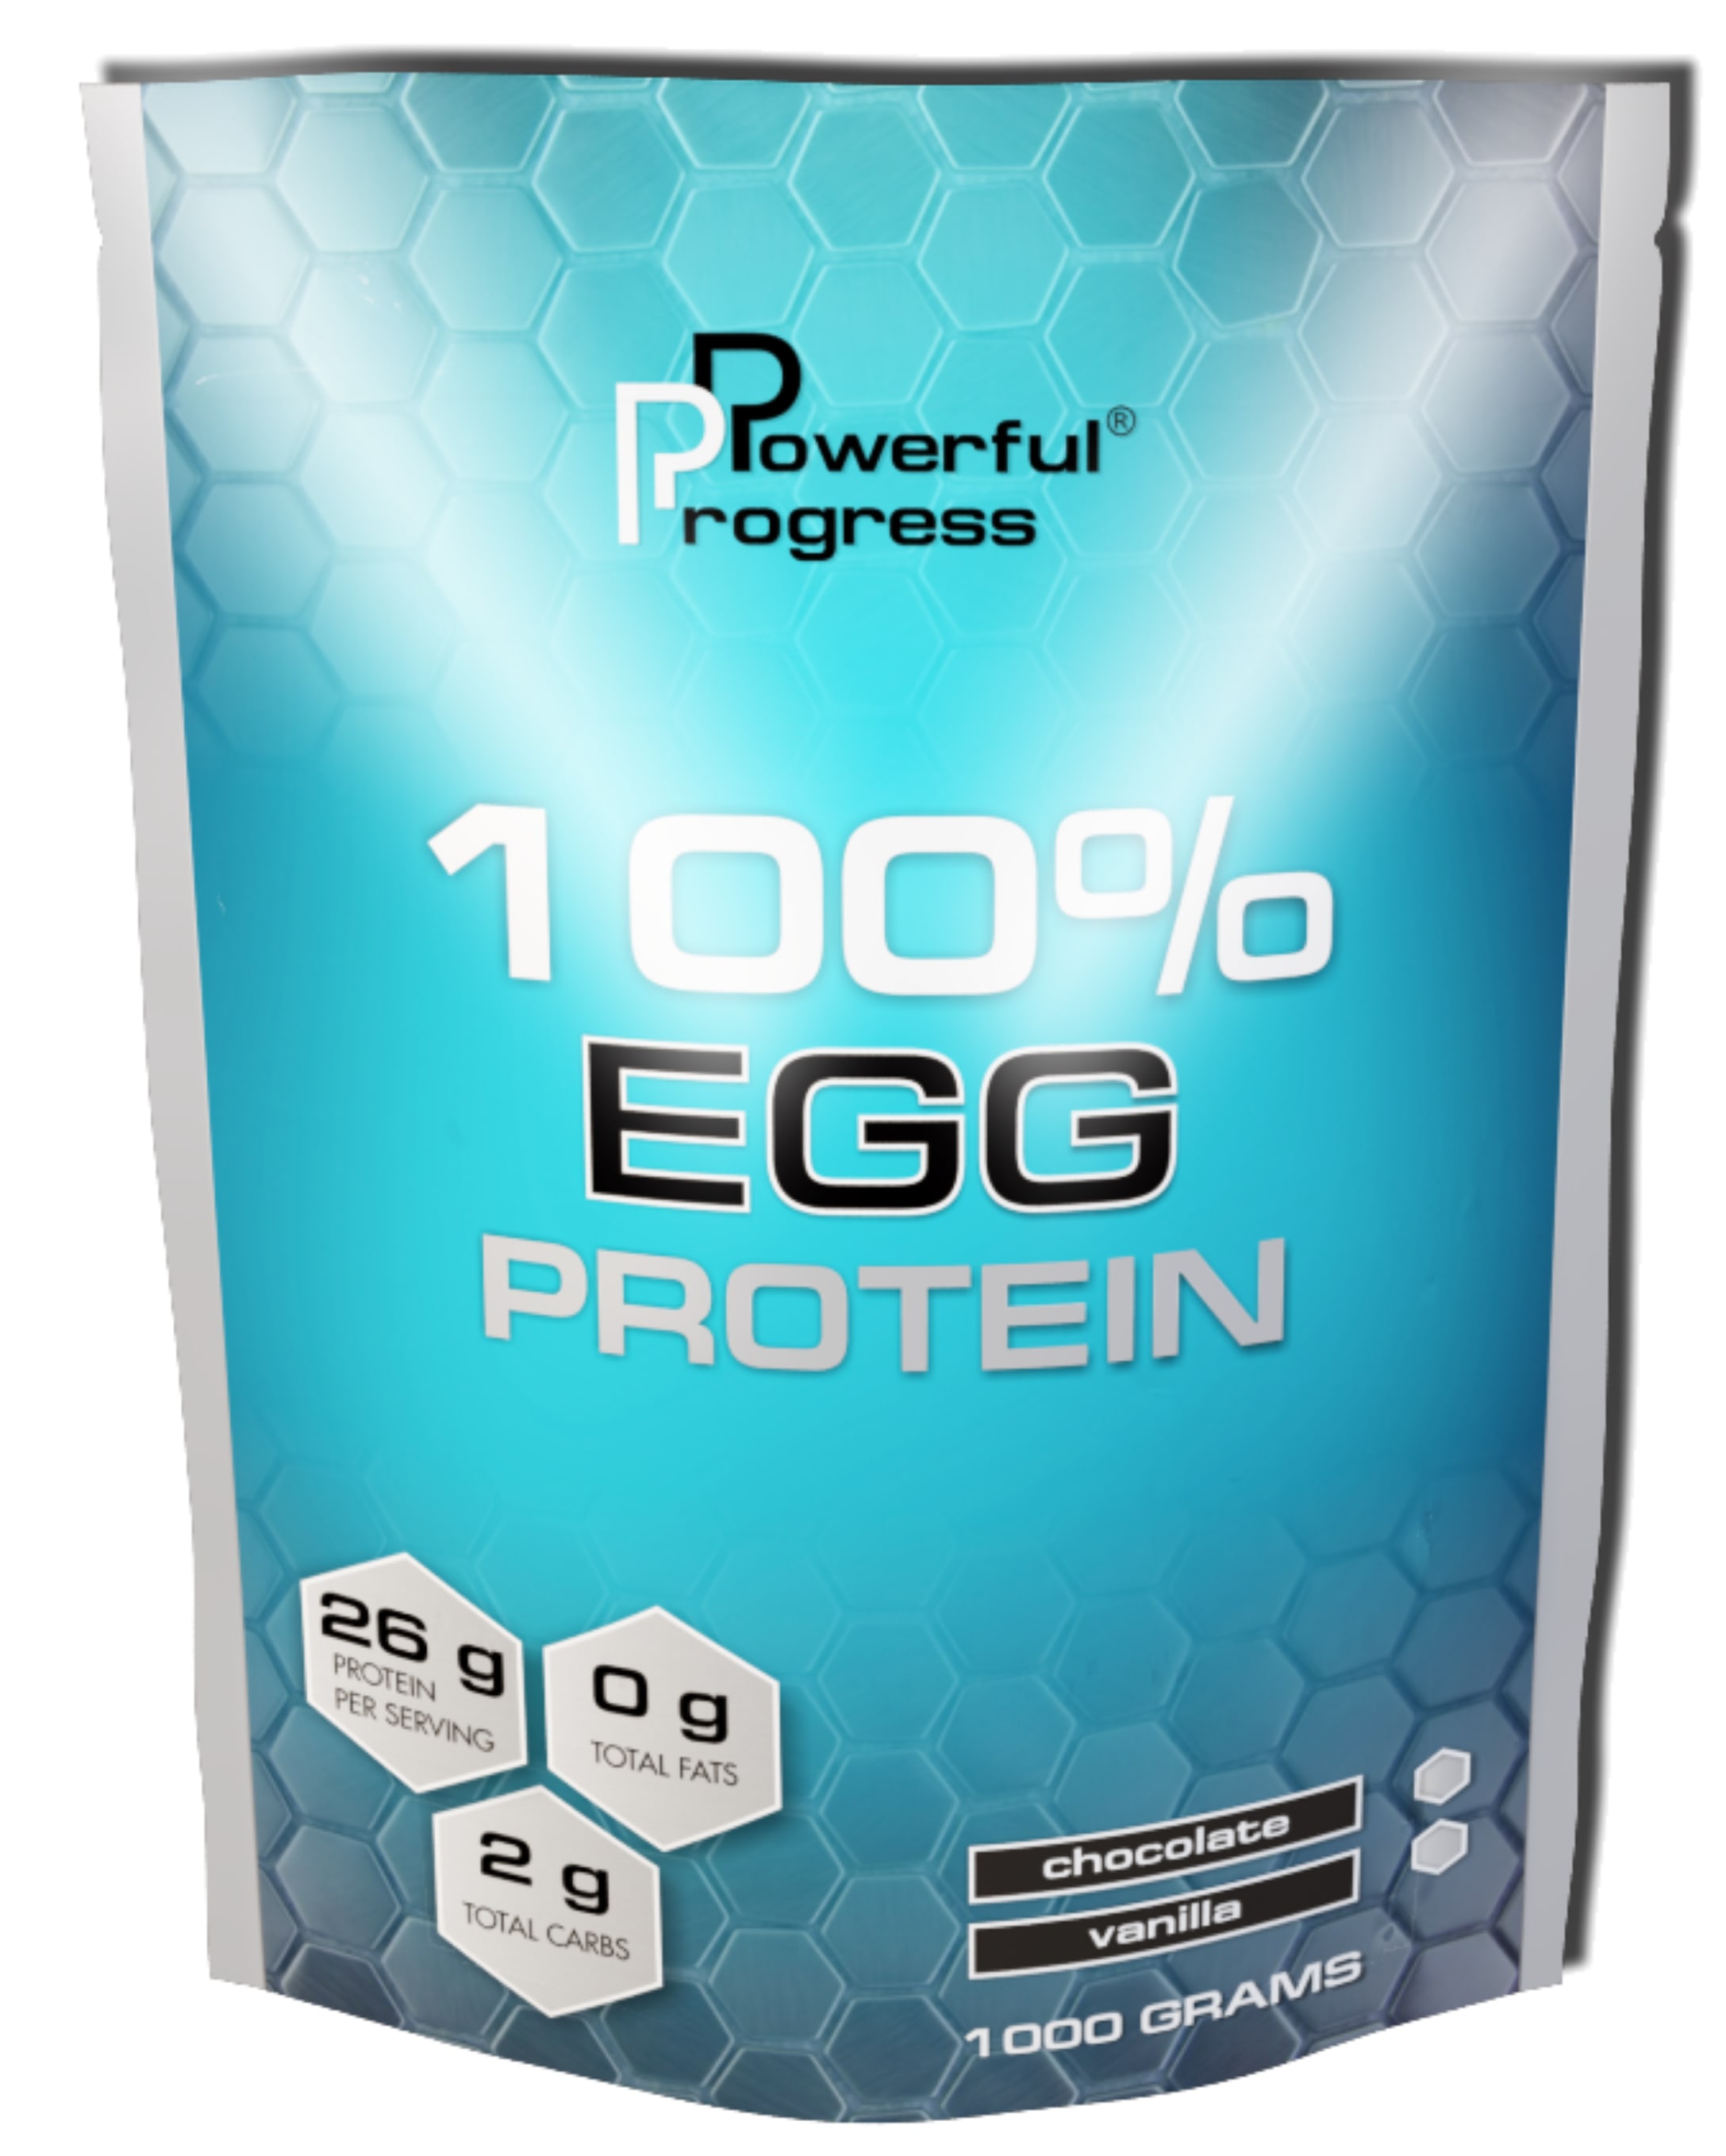 100% Egg Protein, 1000 ml, Powerful Progress. Egg protein. 